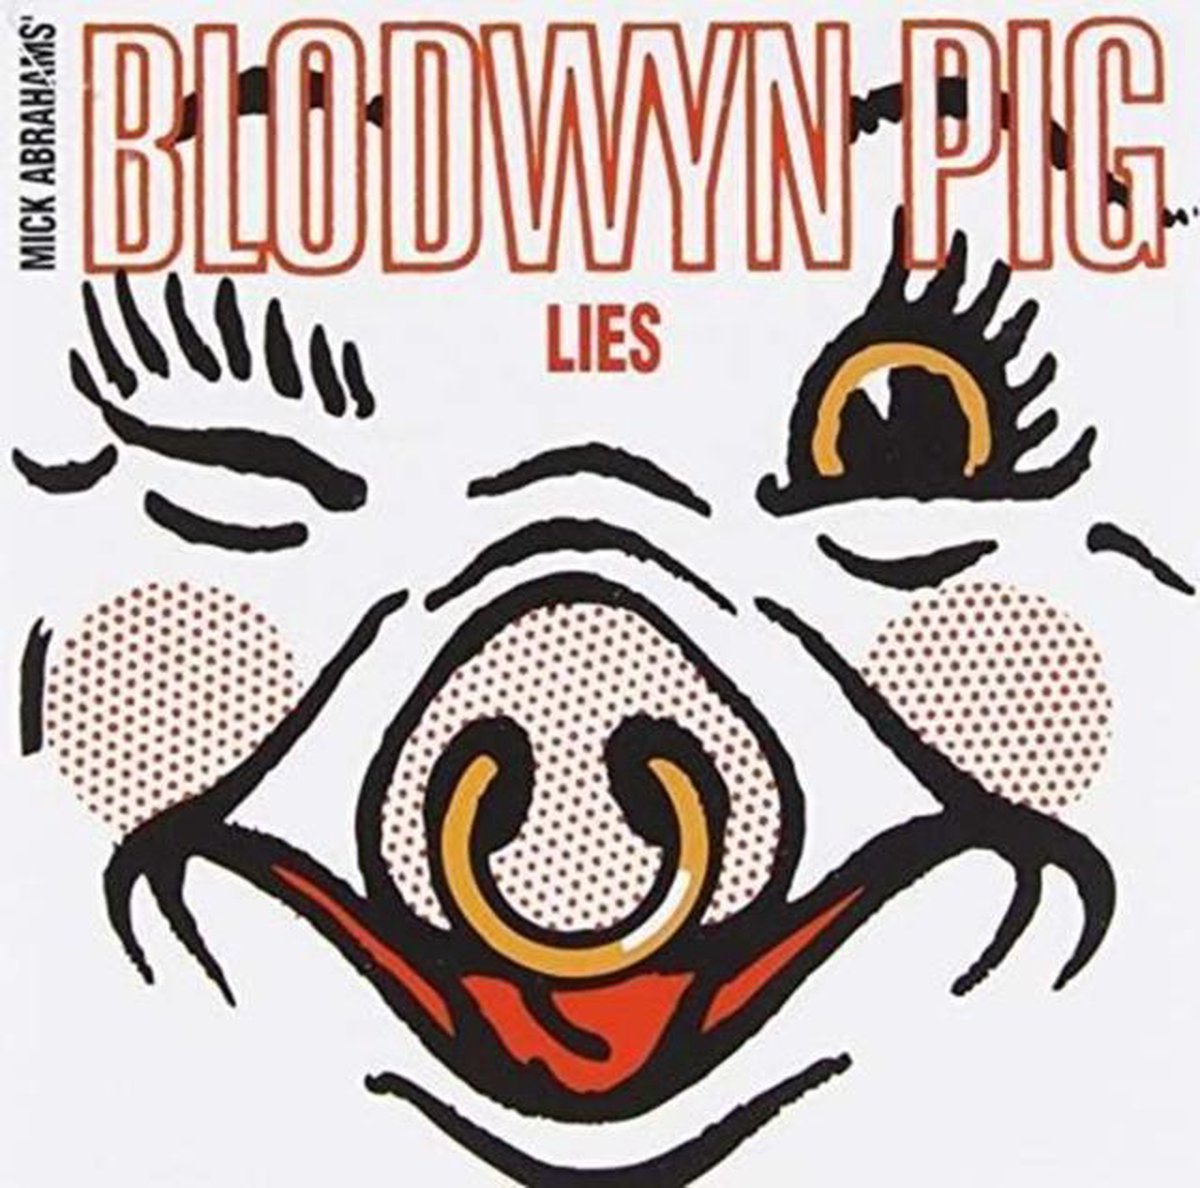 Basement Tapes/Lies - Blodwyn Pig